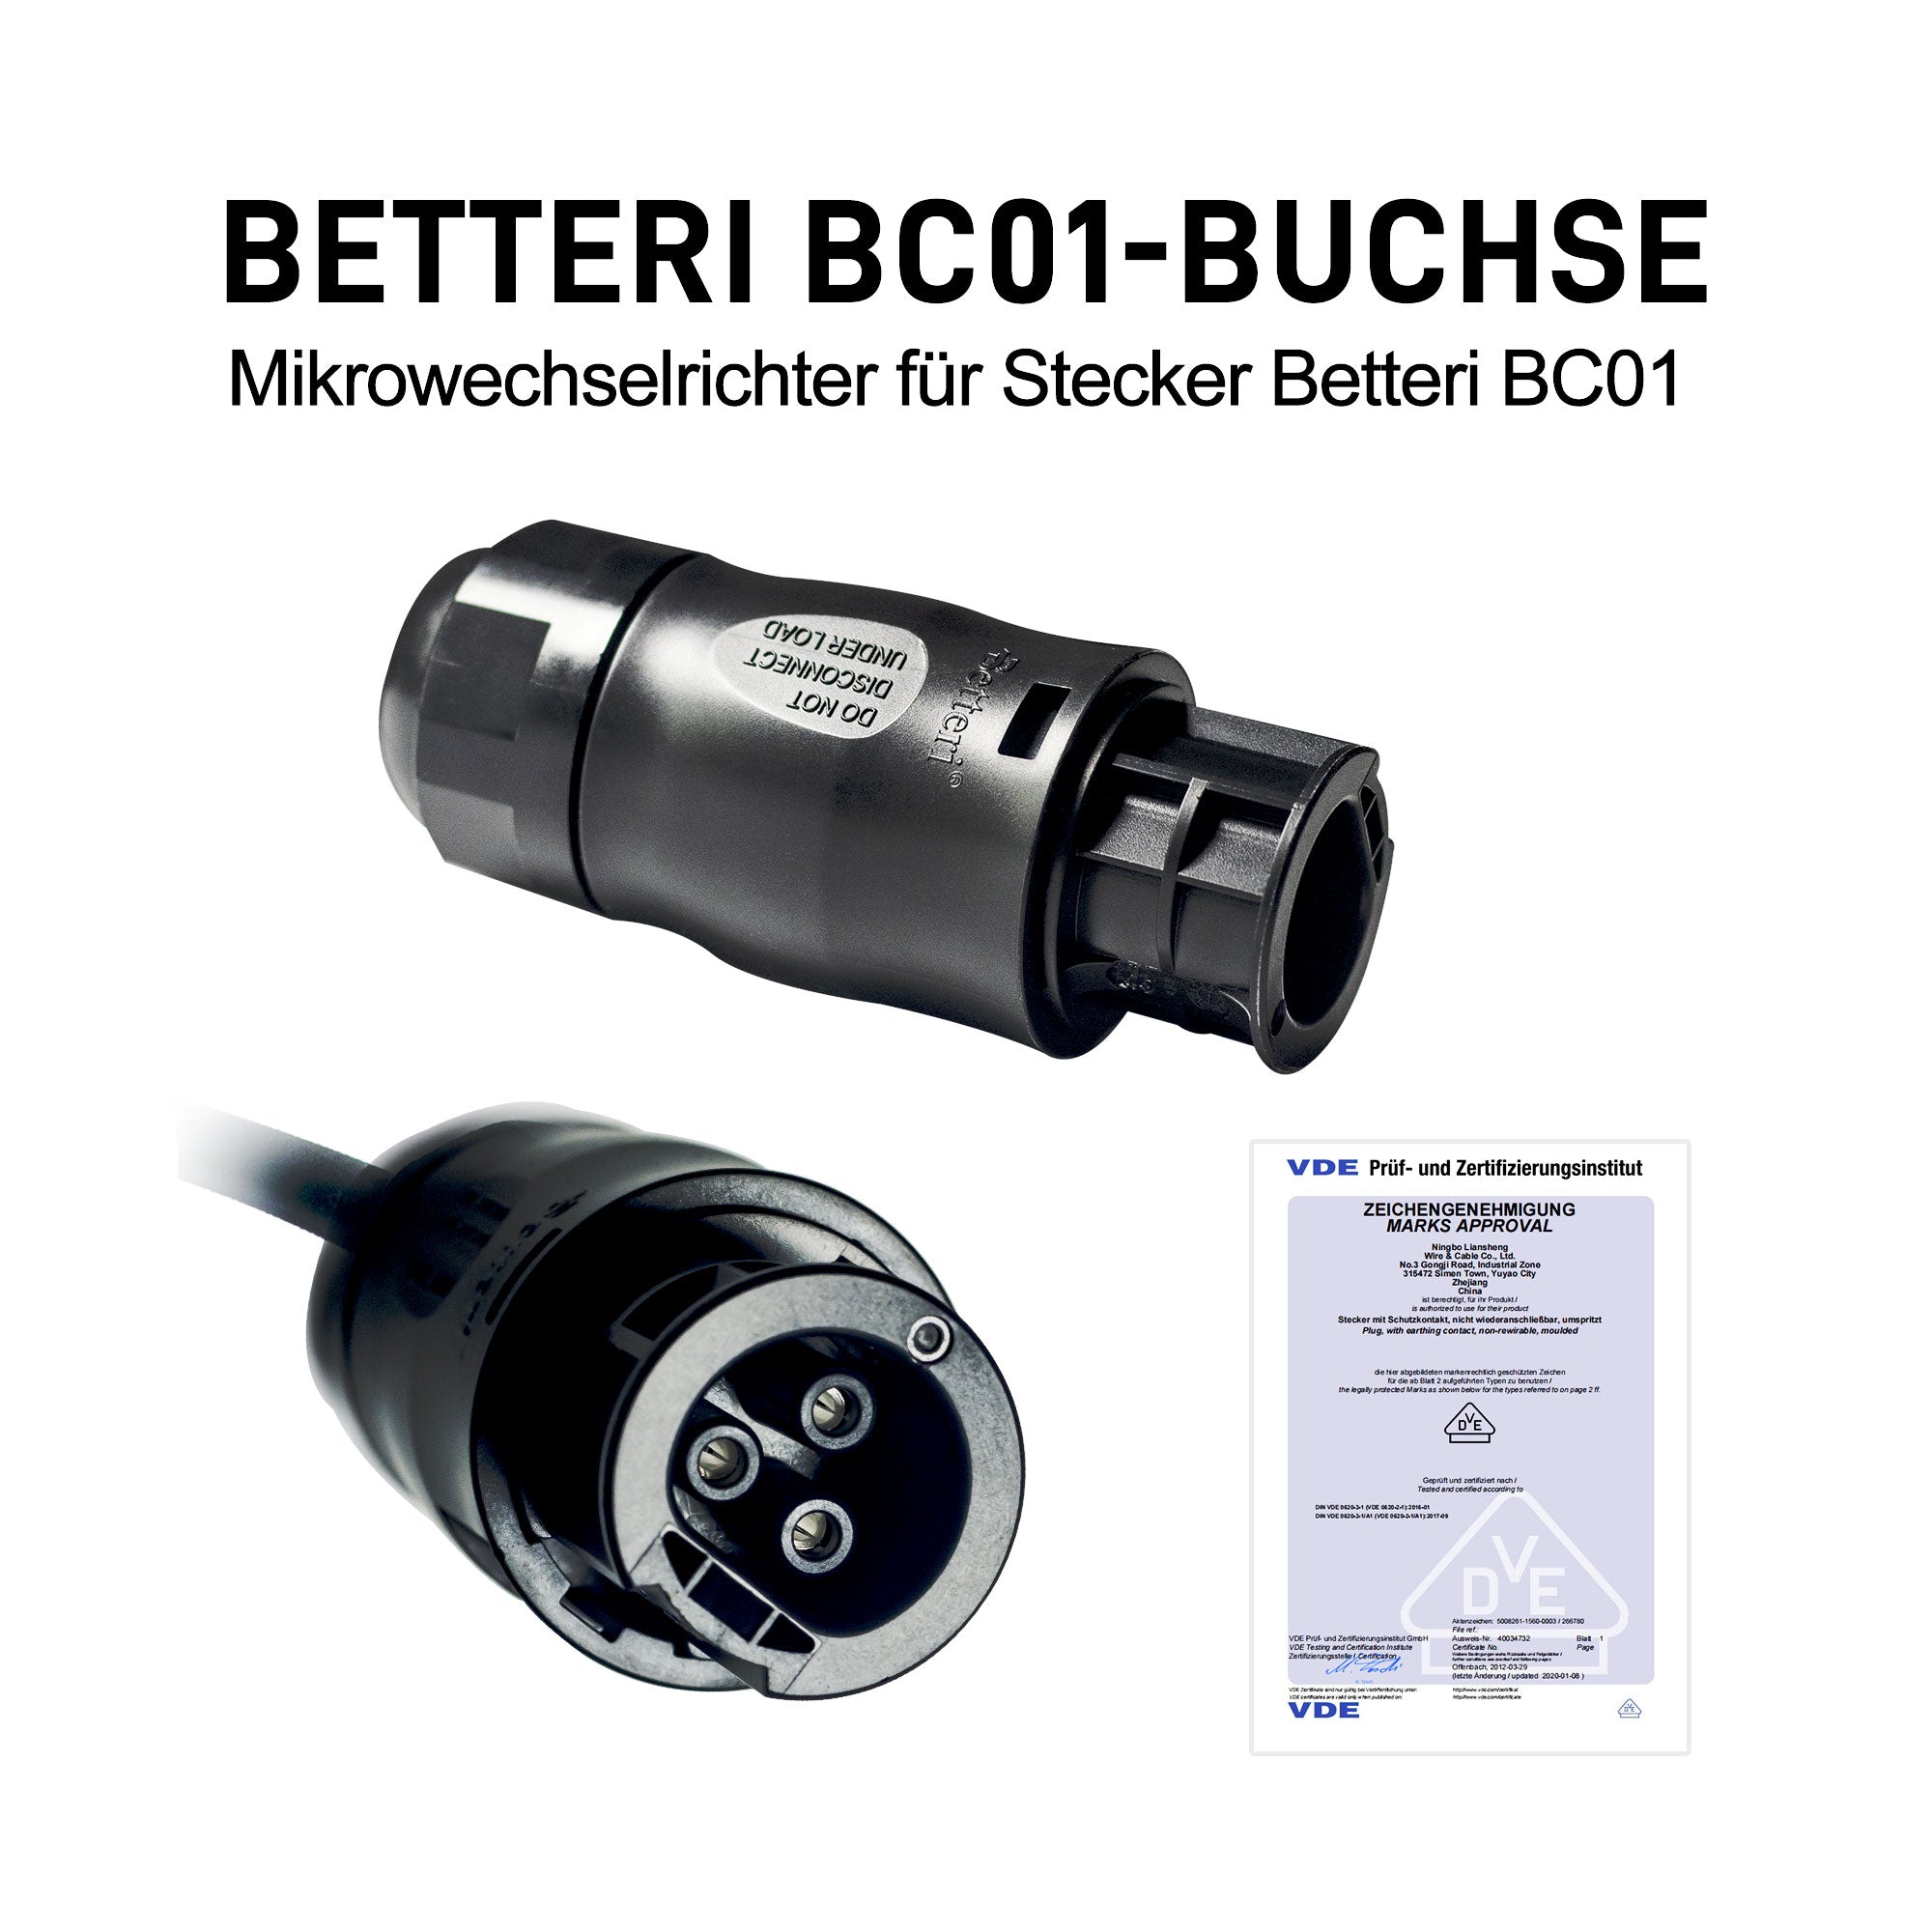 AC Kabel mit Betteri BC01 Buchse – EFORU GmbH